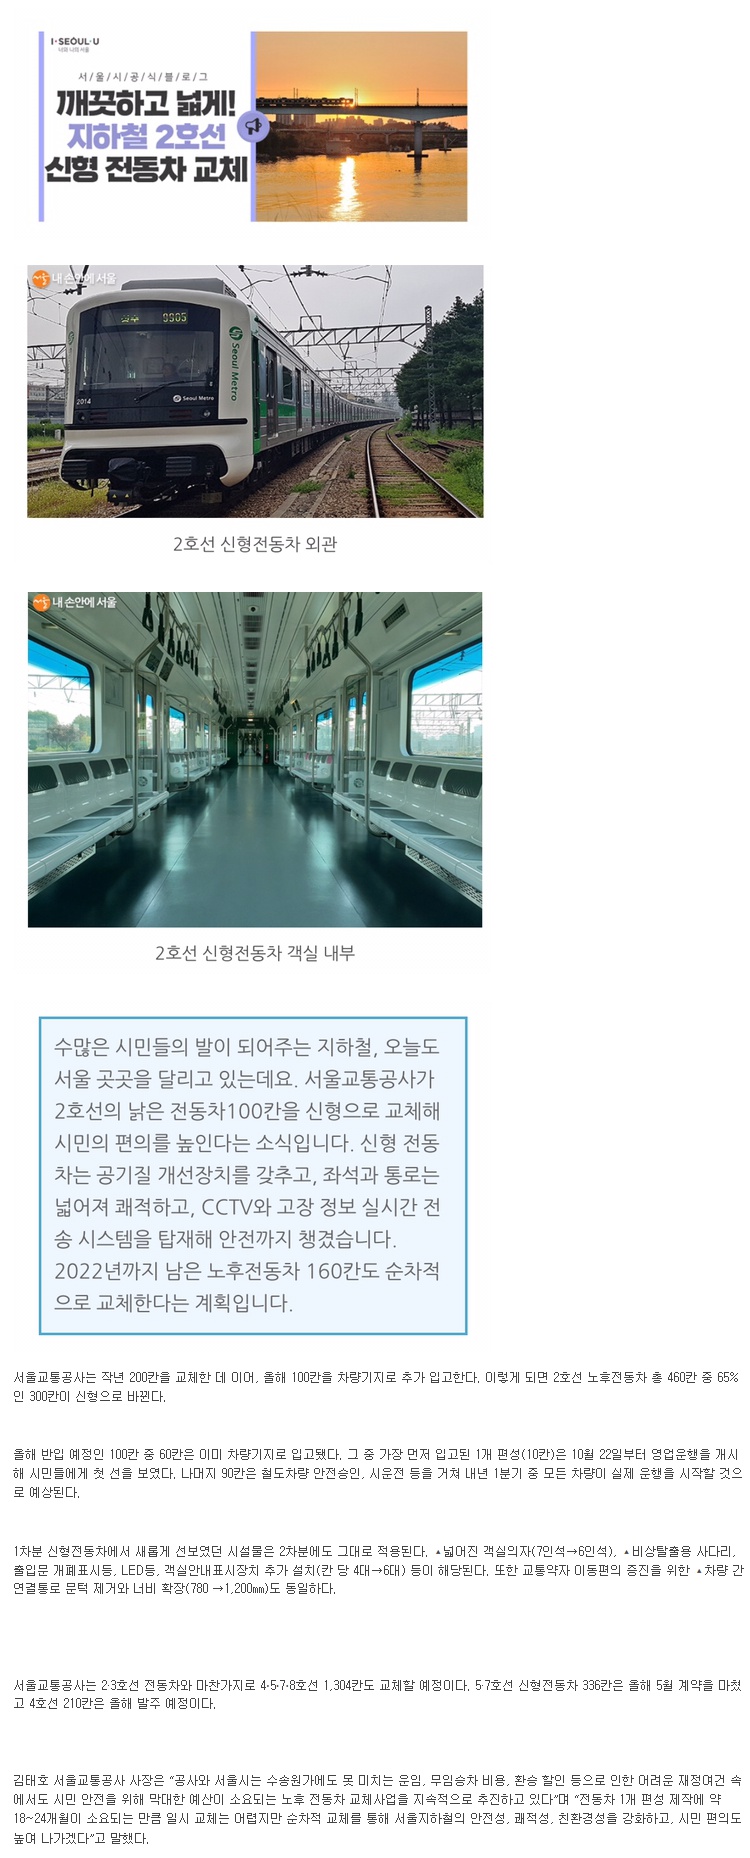 서울 지하철 2호선 열차 교체